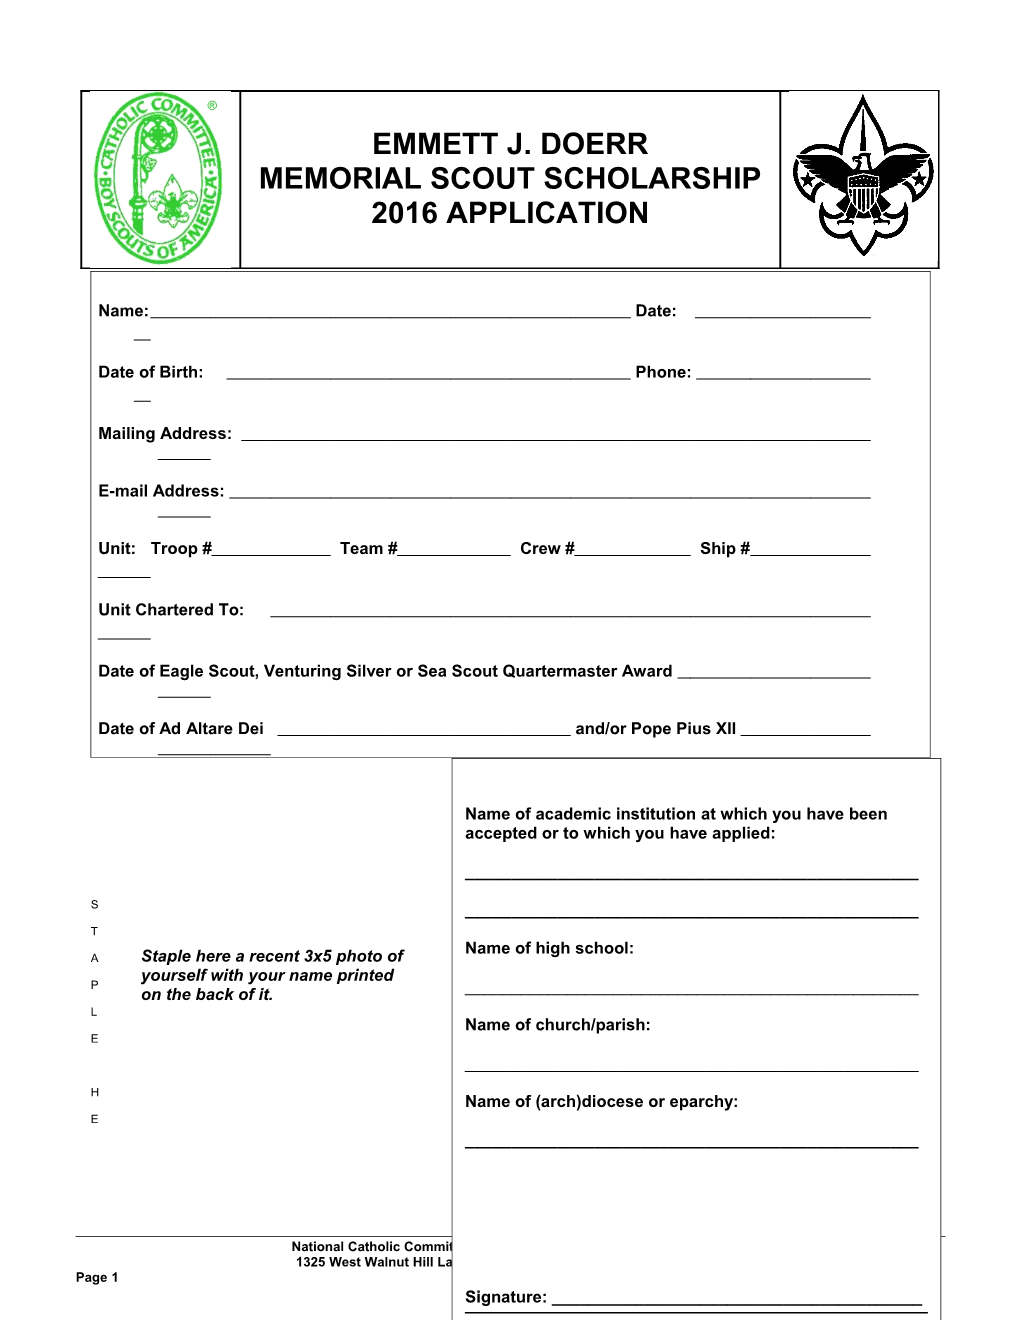 Emmett J. Doerr Memorial Scout Scholarship Application s2